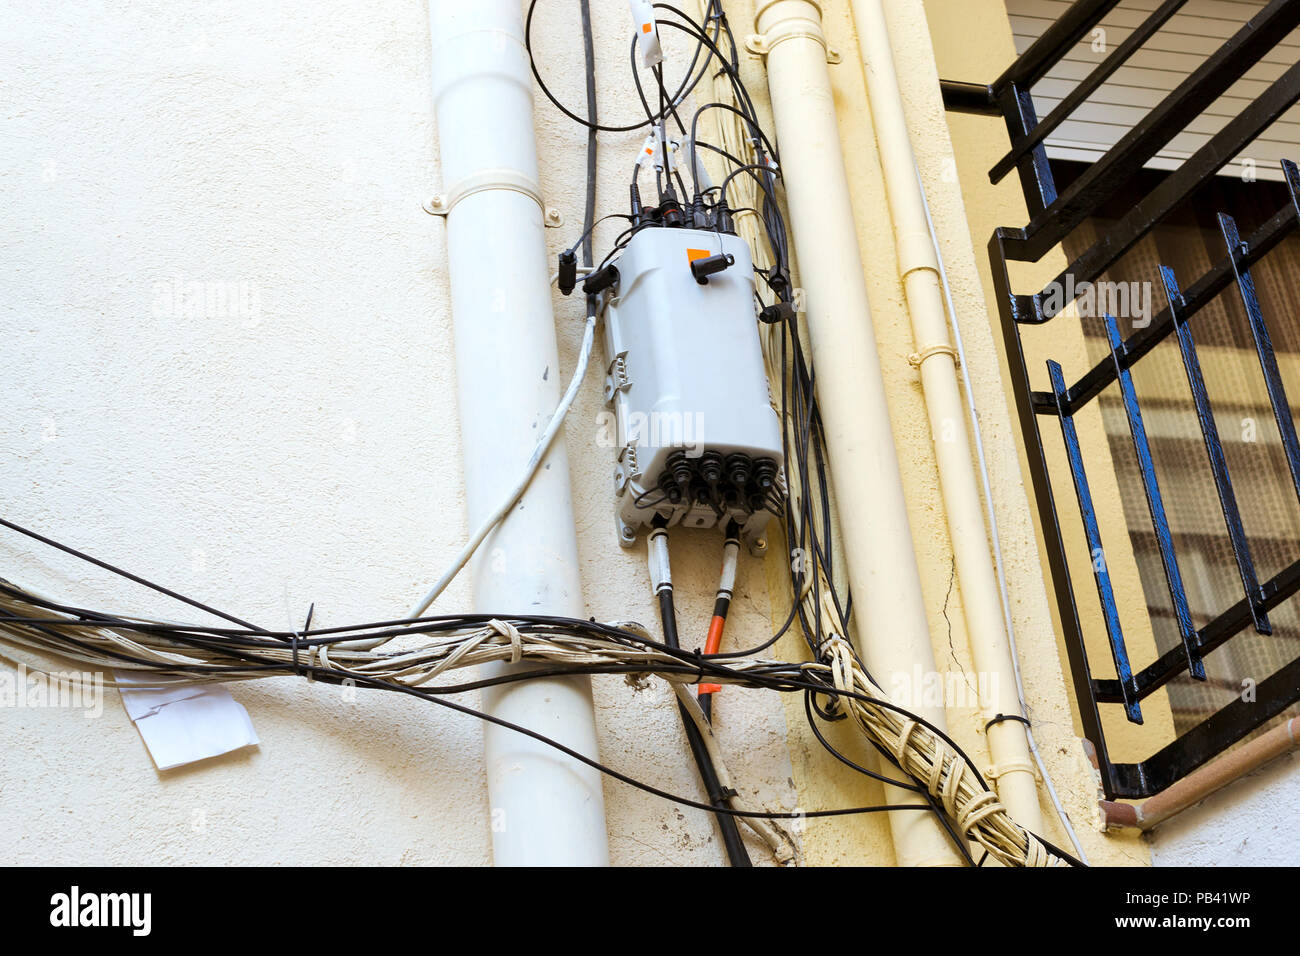 Hohe Spannung Strom Kabel, Telefon und Internet Kabel vor Gebäude Fassade. Architektur der Spanischen beach resort Blanes im Sommer Stockfoto